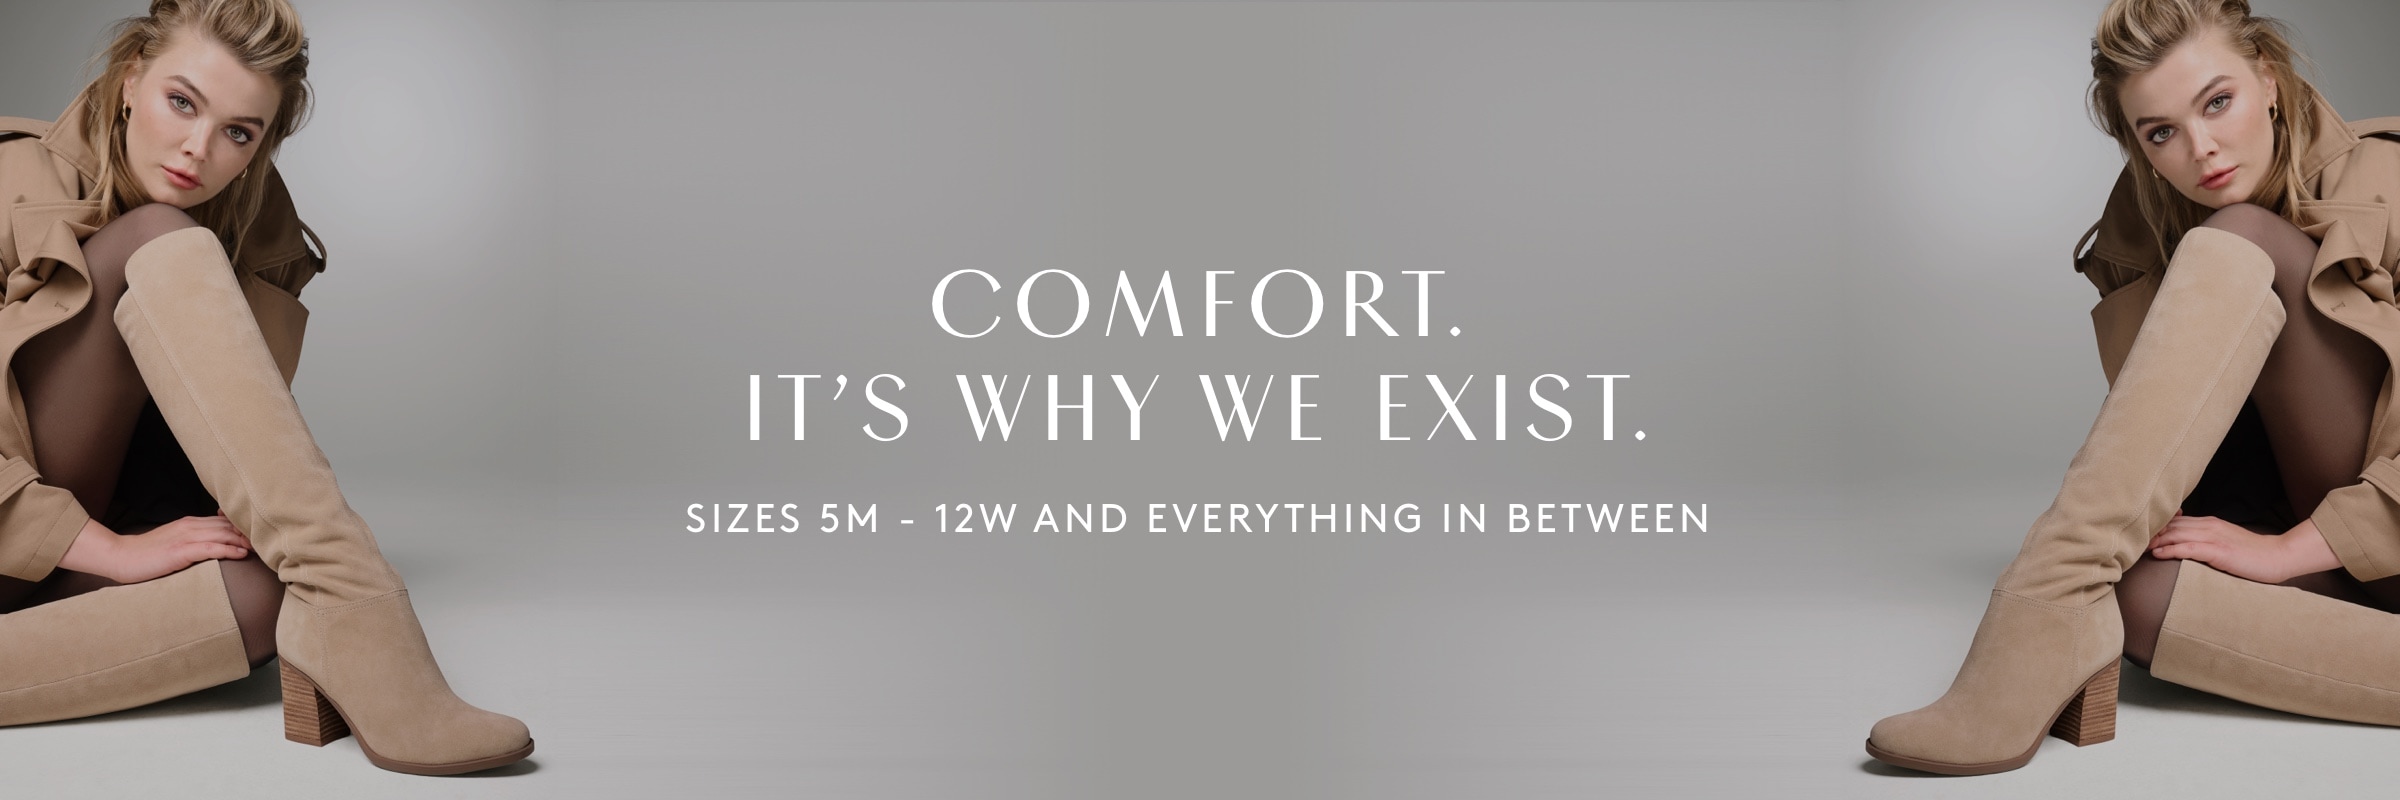 comfort. it's why we exist